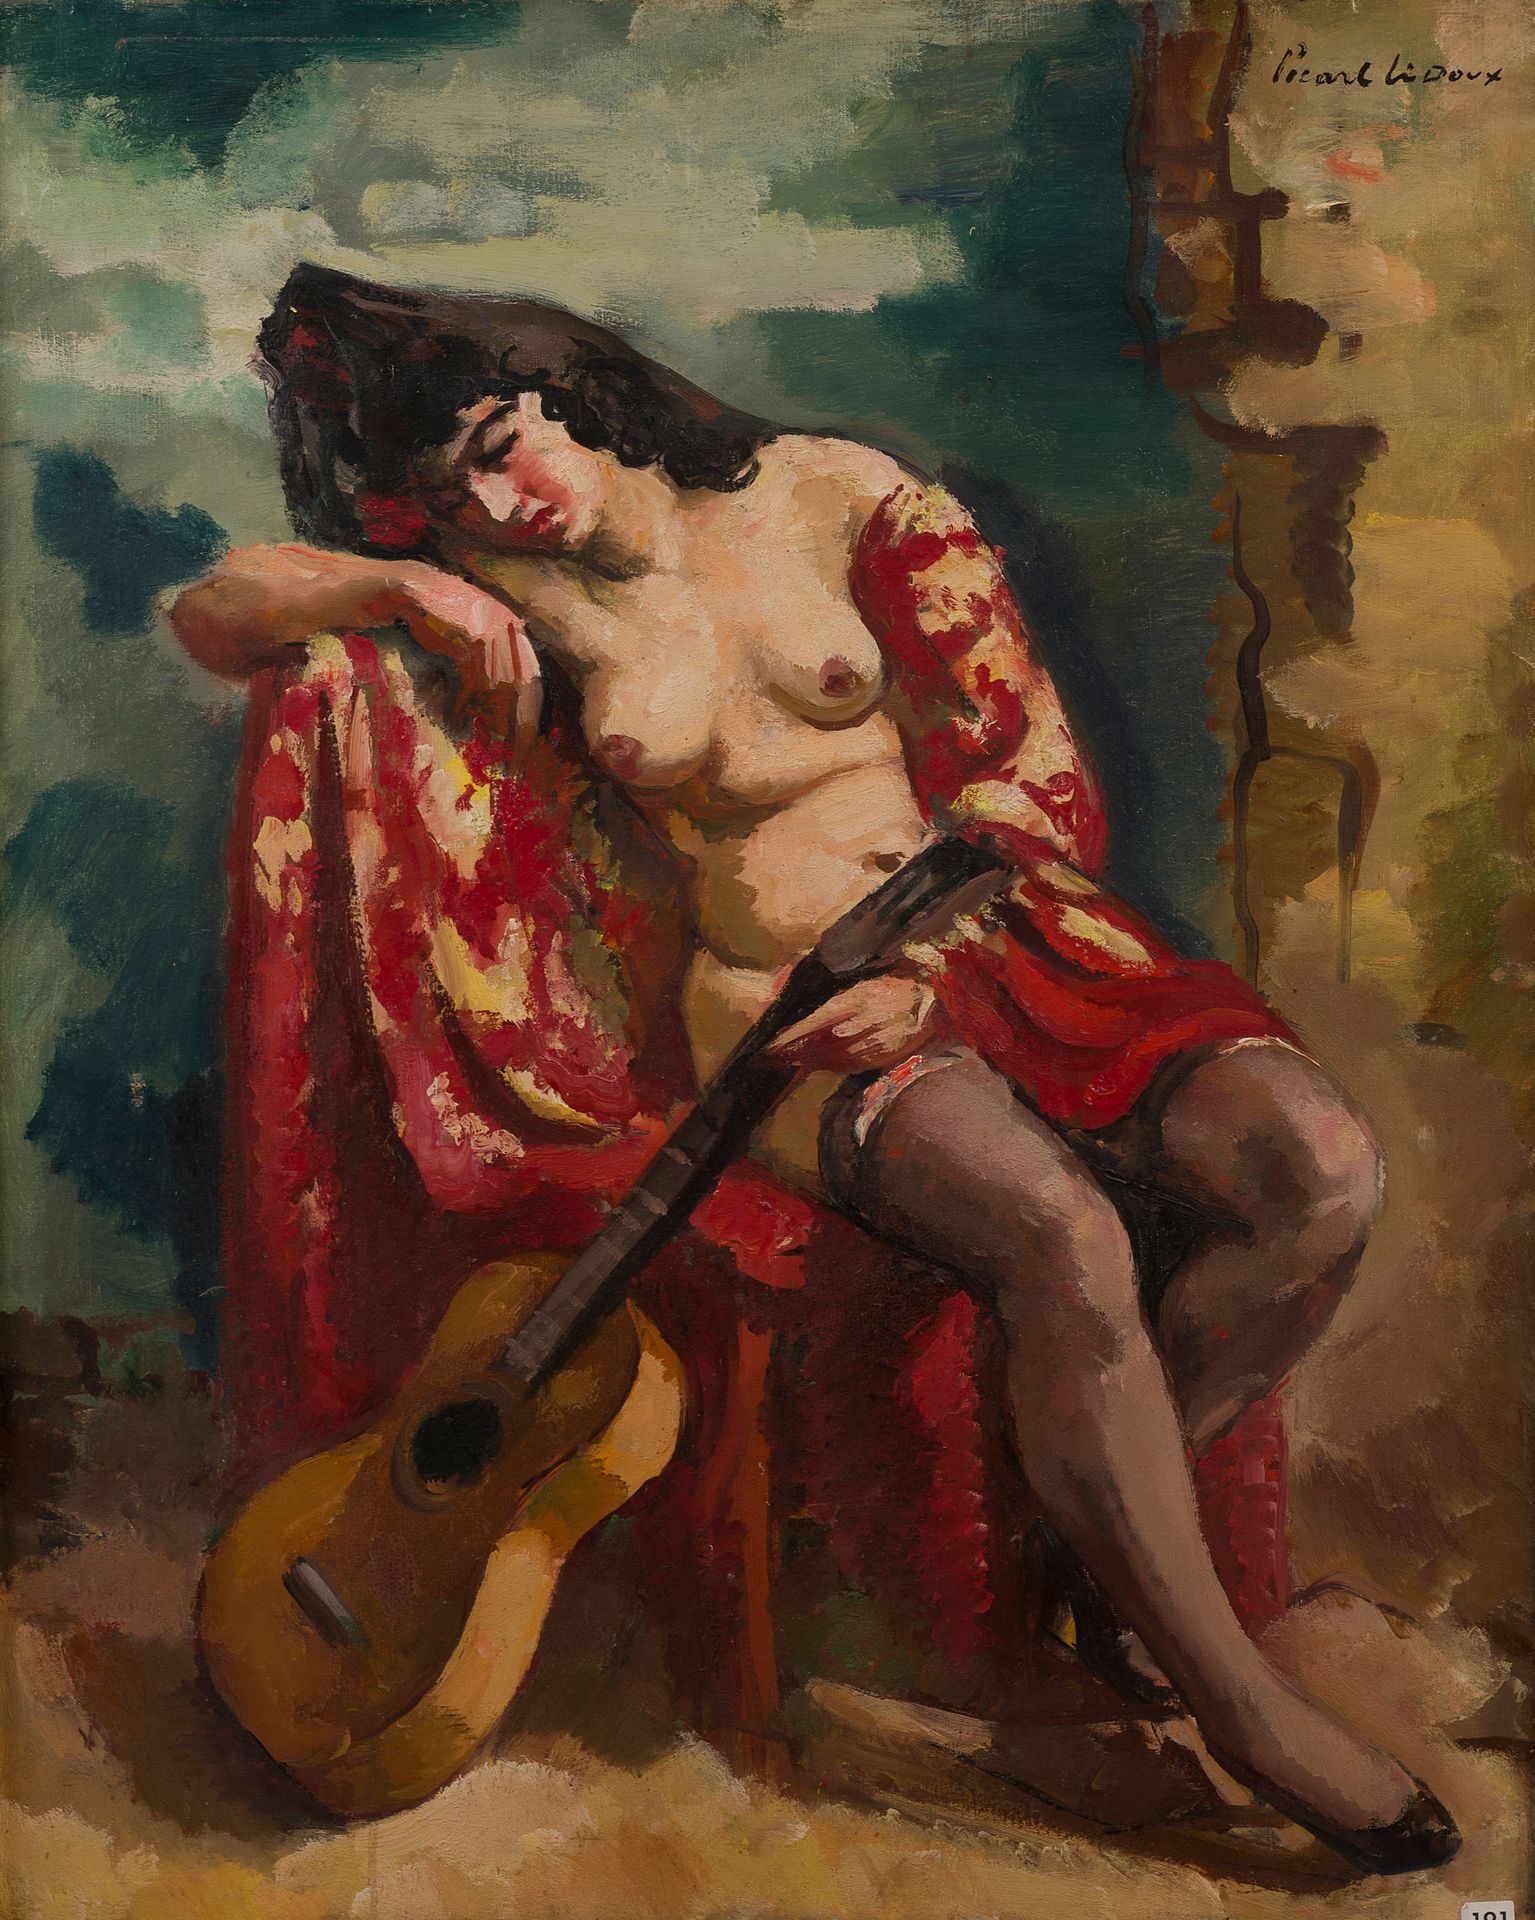 Null 查尔斯-皮卡特-勒杜(1881-1959)
弹吉他的裸体，1938年
布面油画
右上方有签名
82 x 65厘米
(小意外)